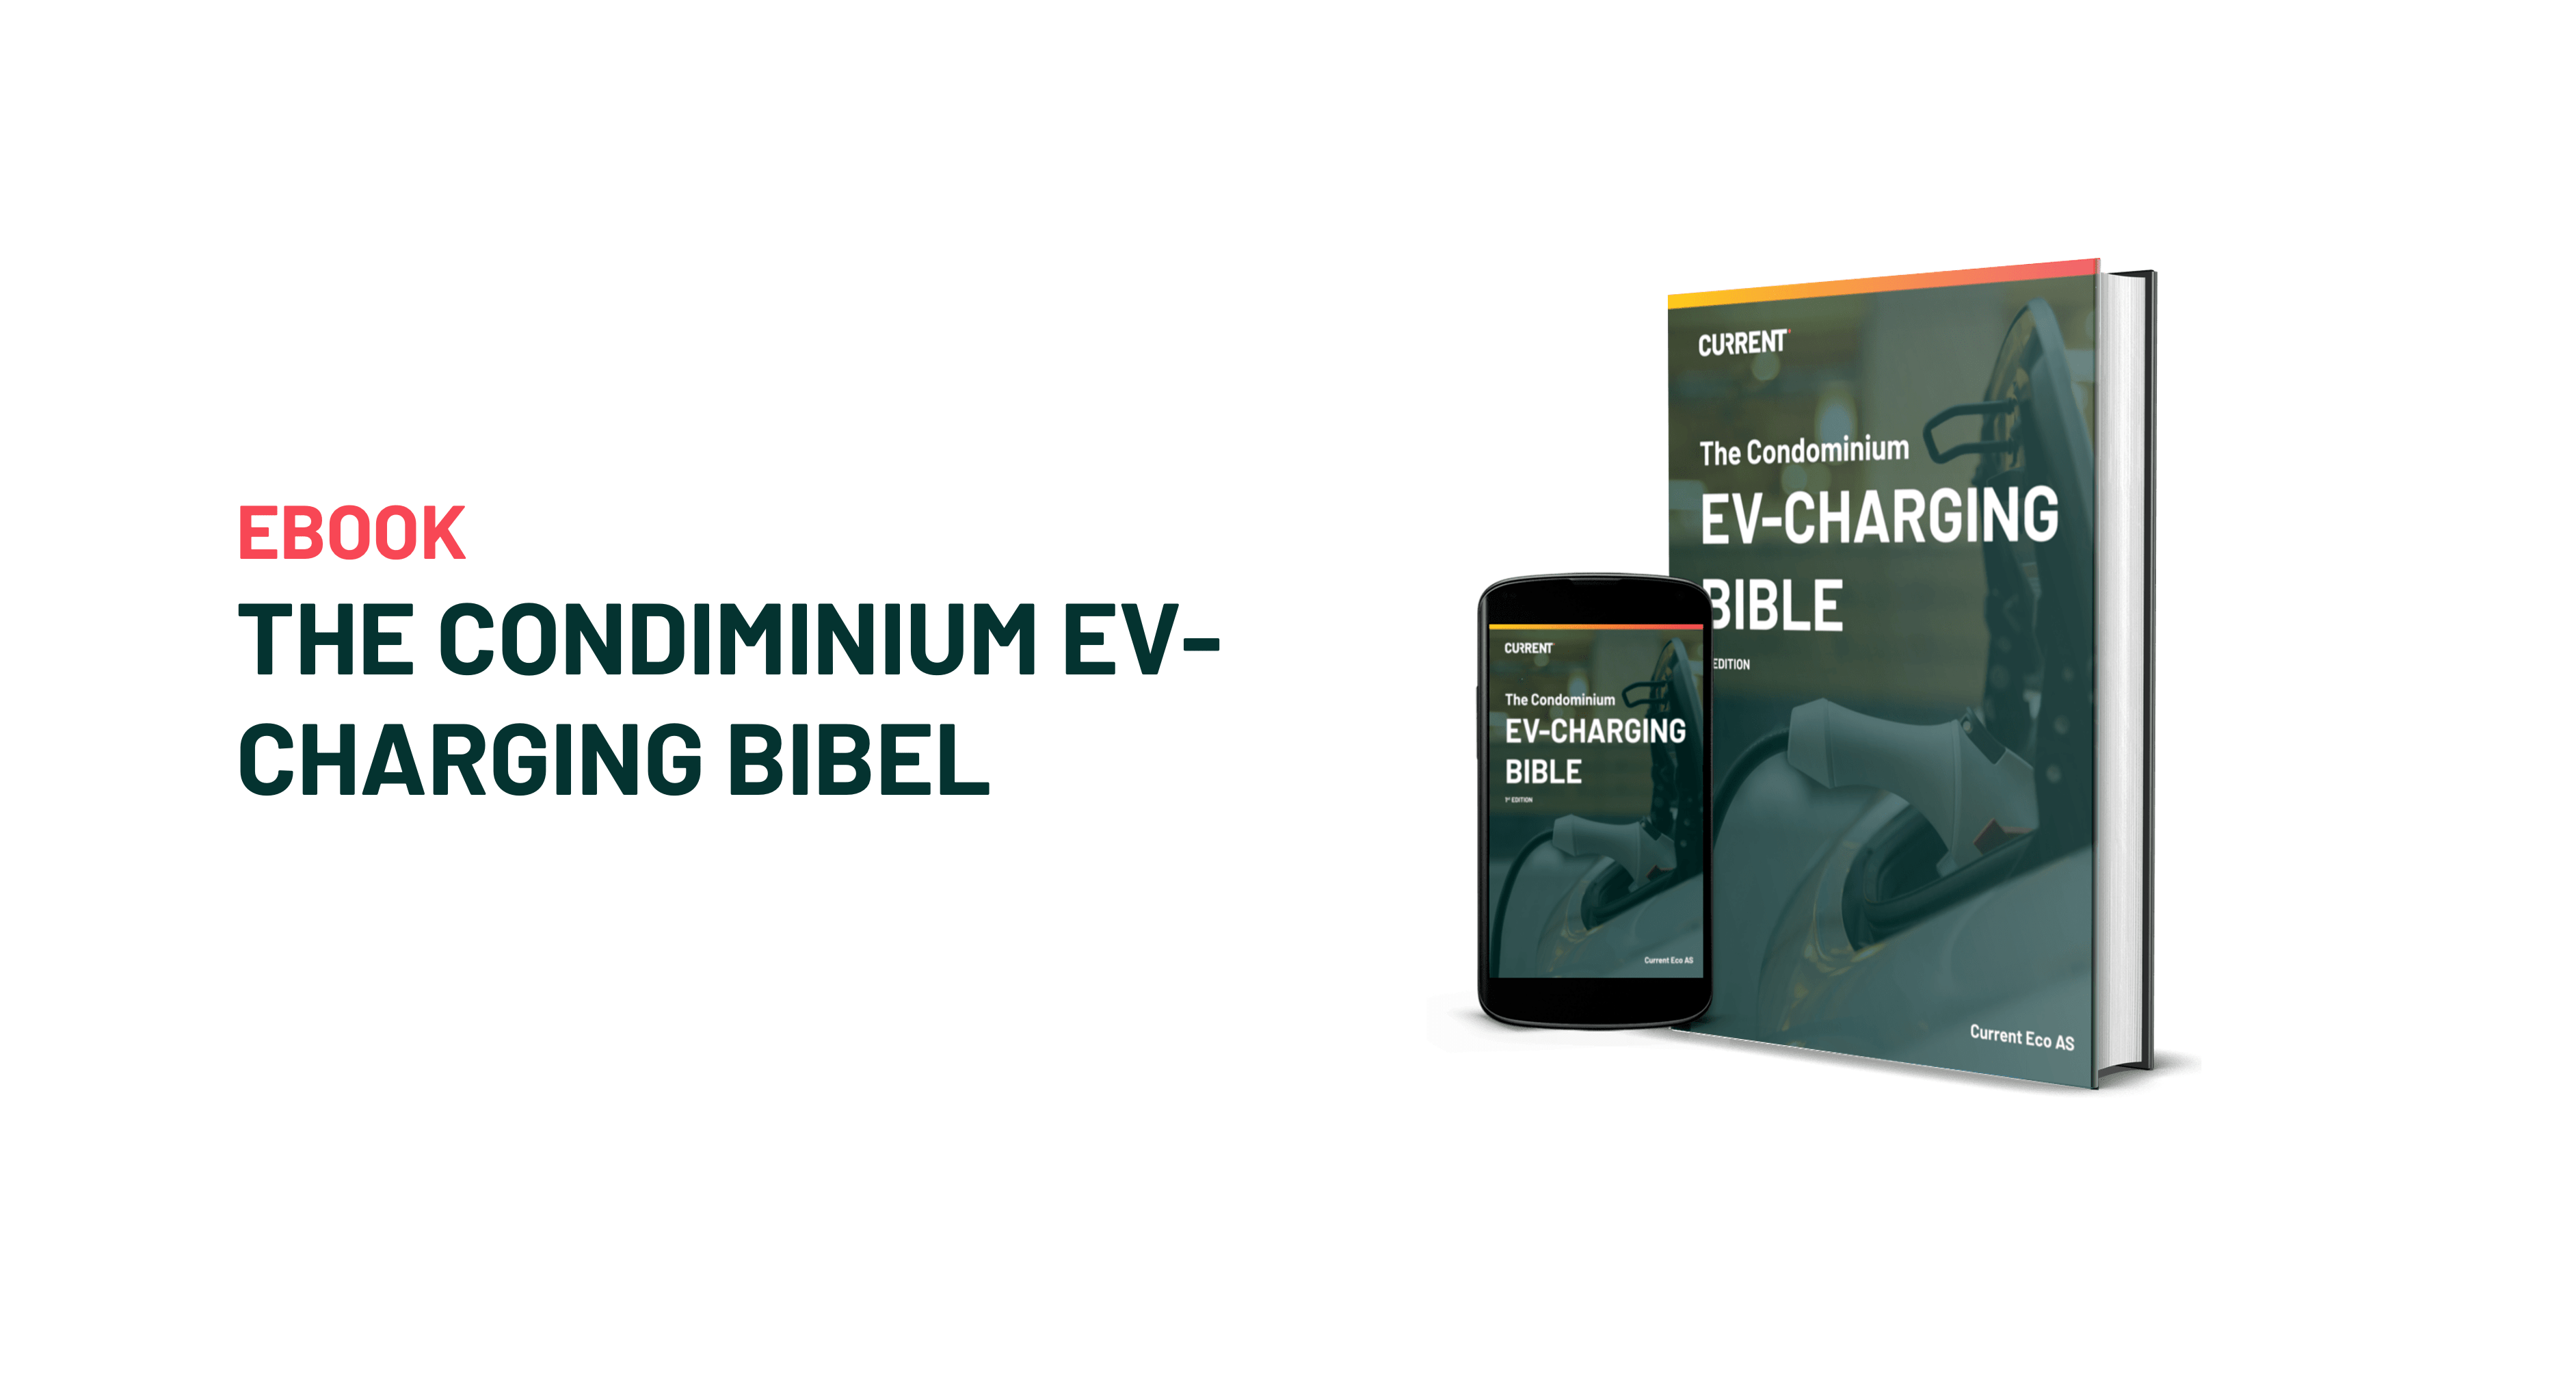 The Condominium EV-Charging Bible